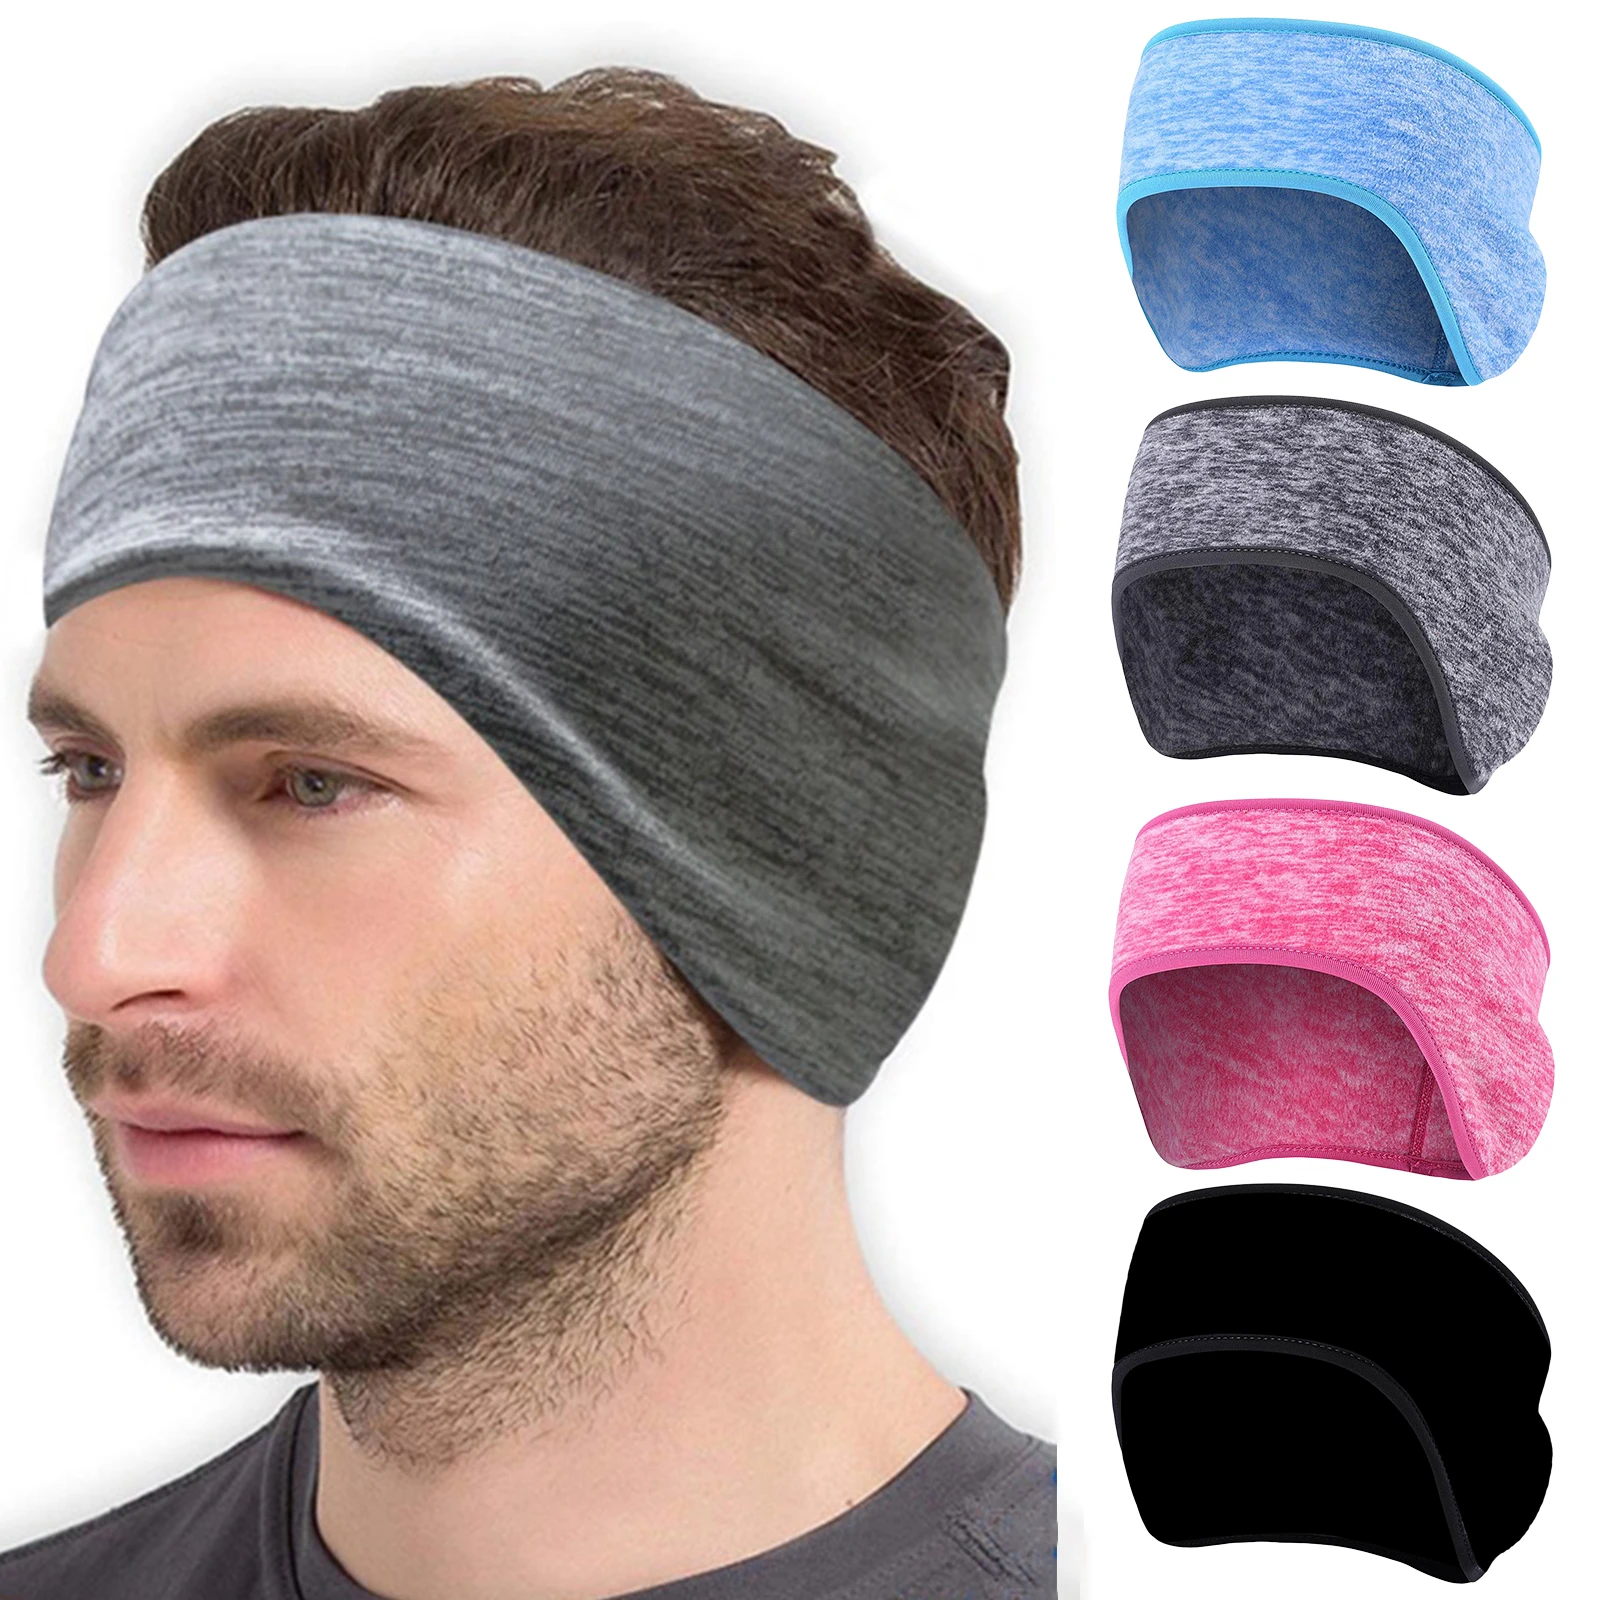 Men Ear Warmers Earmuffs Winter Fleece Headwrap Fashion Sport Unisex Headbands